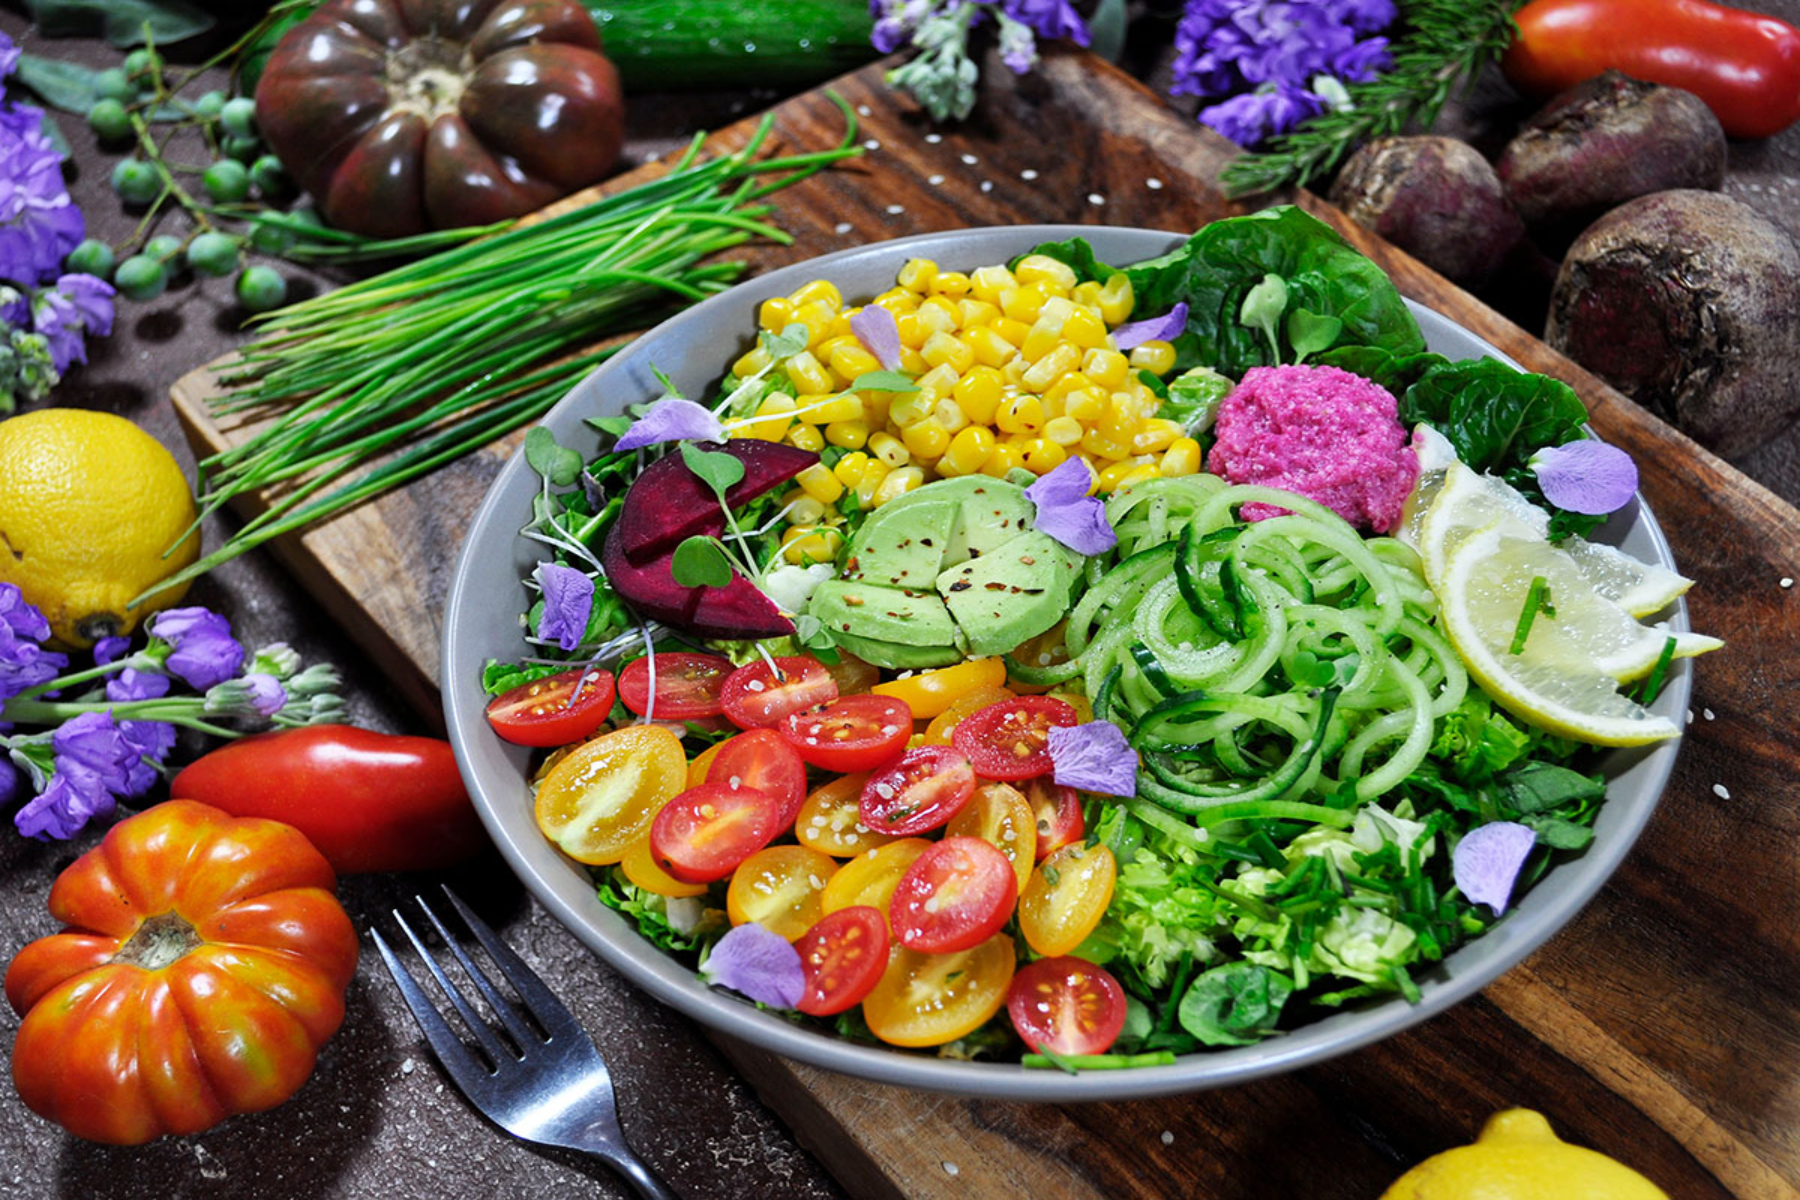 Σαλάτες: Προσθέστε τις σαλάτες στην καθημερινή σας διατροφή